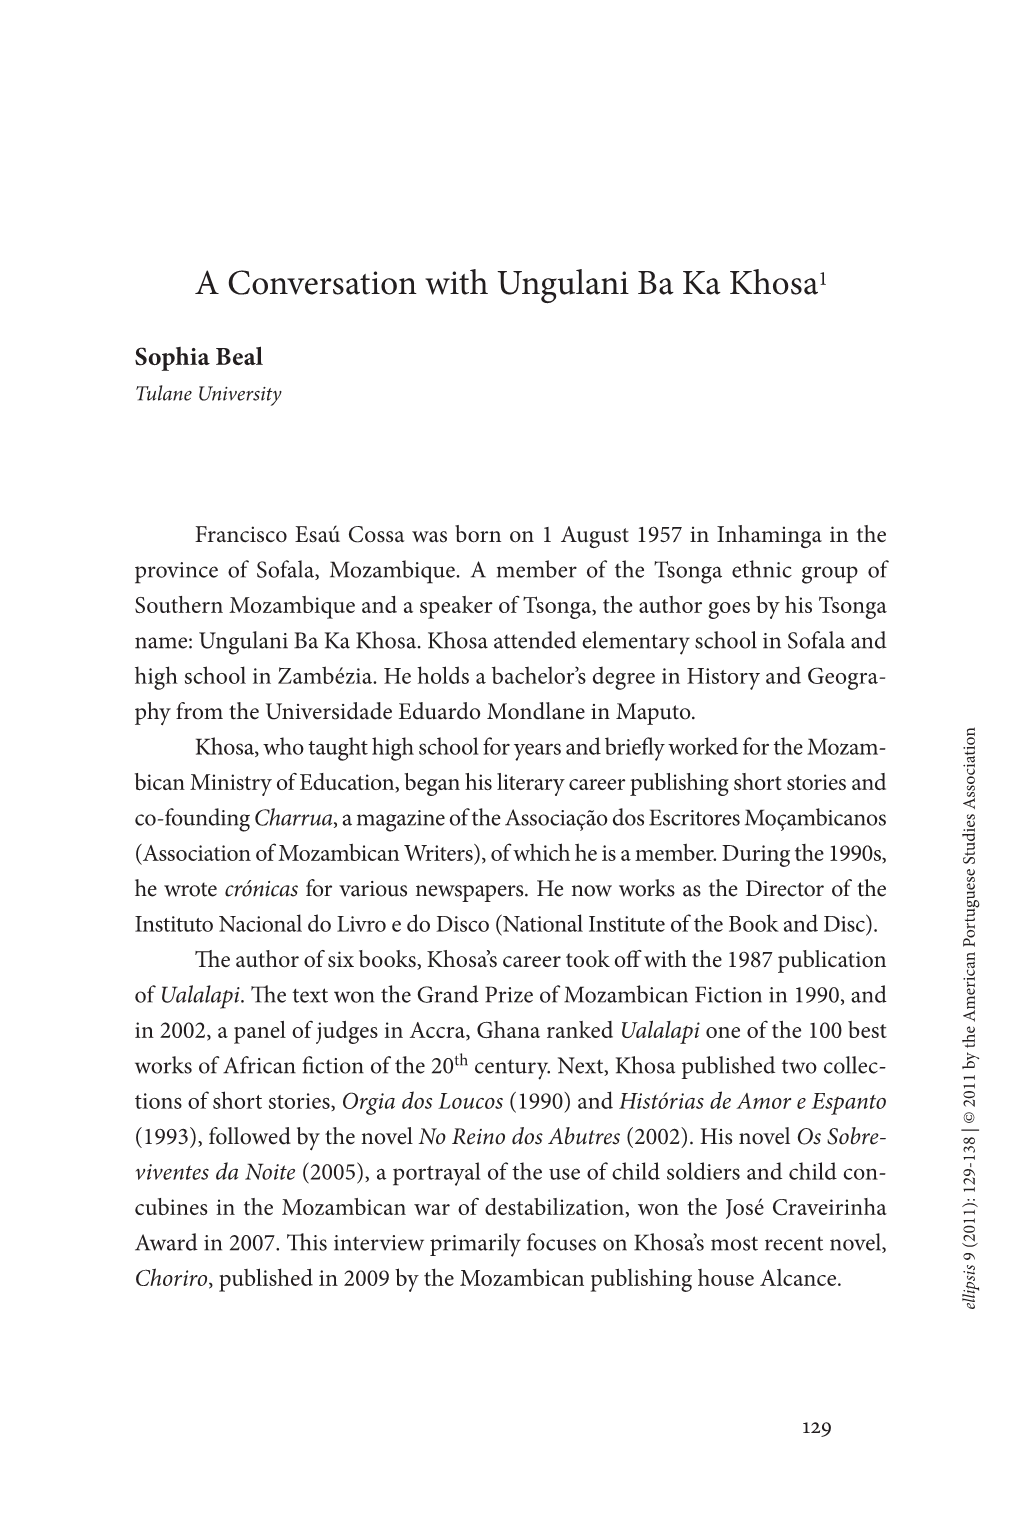 A Conversation with Ungulani Ba Ka Khosa1